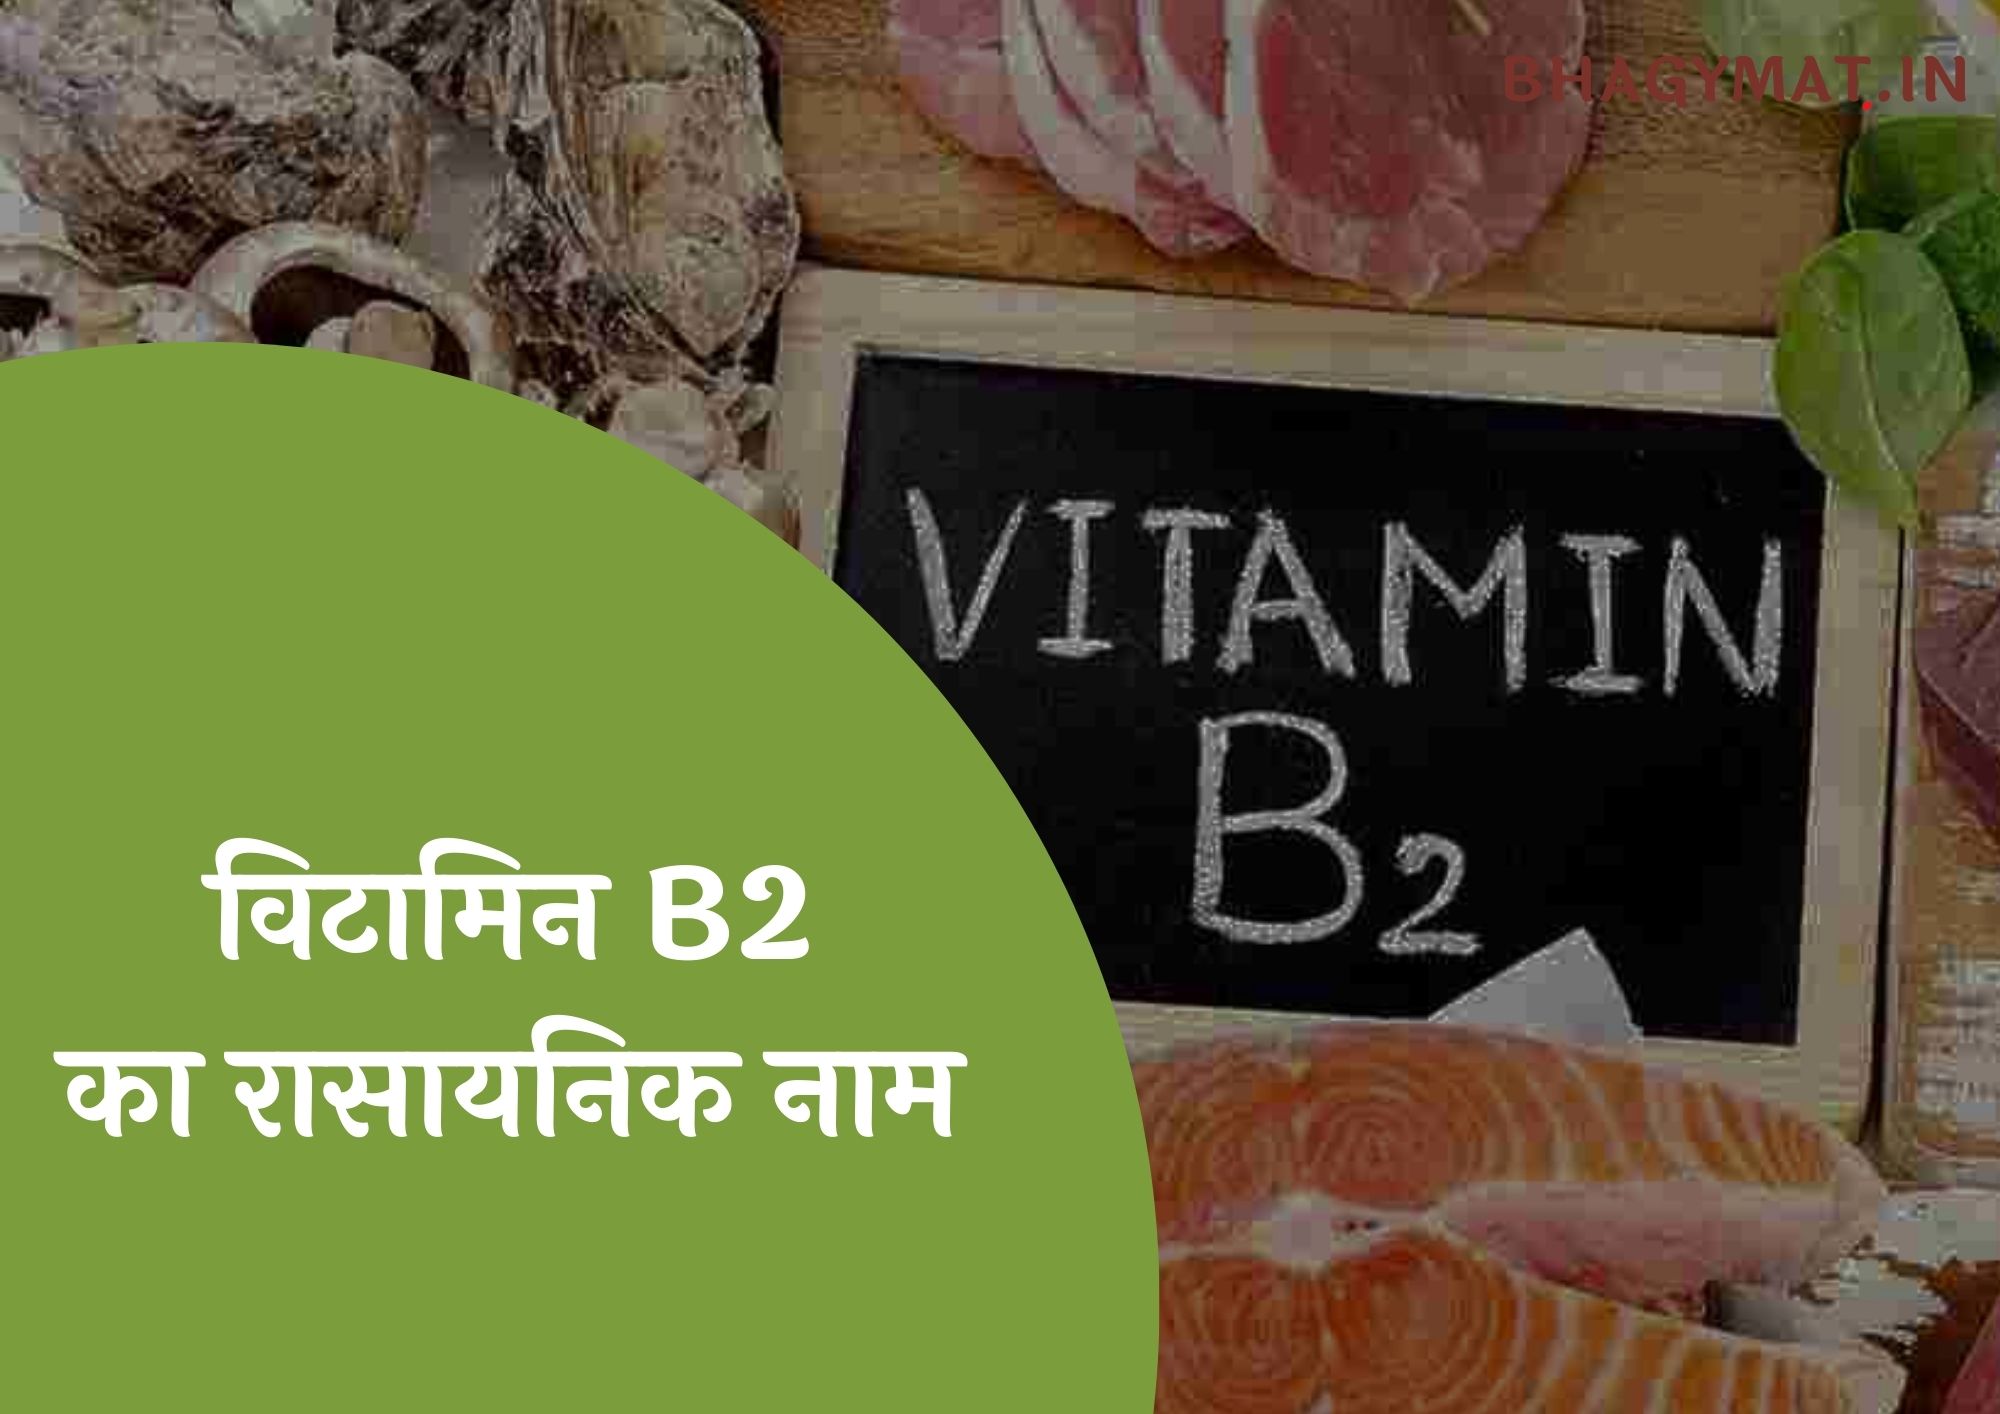 विटामिन B2 का रासायनिक नाम क्या है (Vitamin B2 Chemical Name In Hindi) - Vitamin B2 Ka Rasayanik Naam Kya Hai